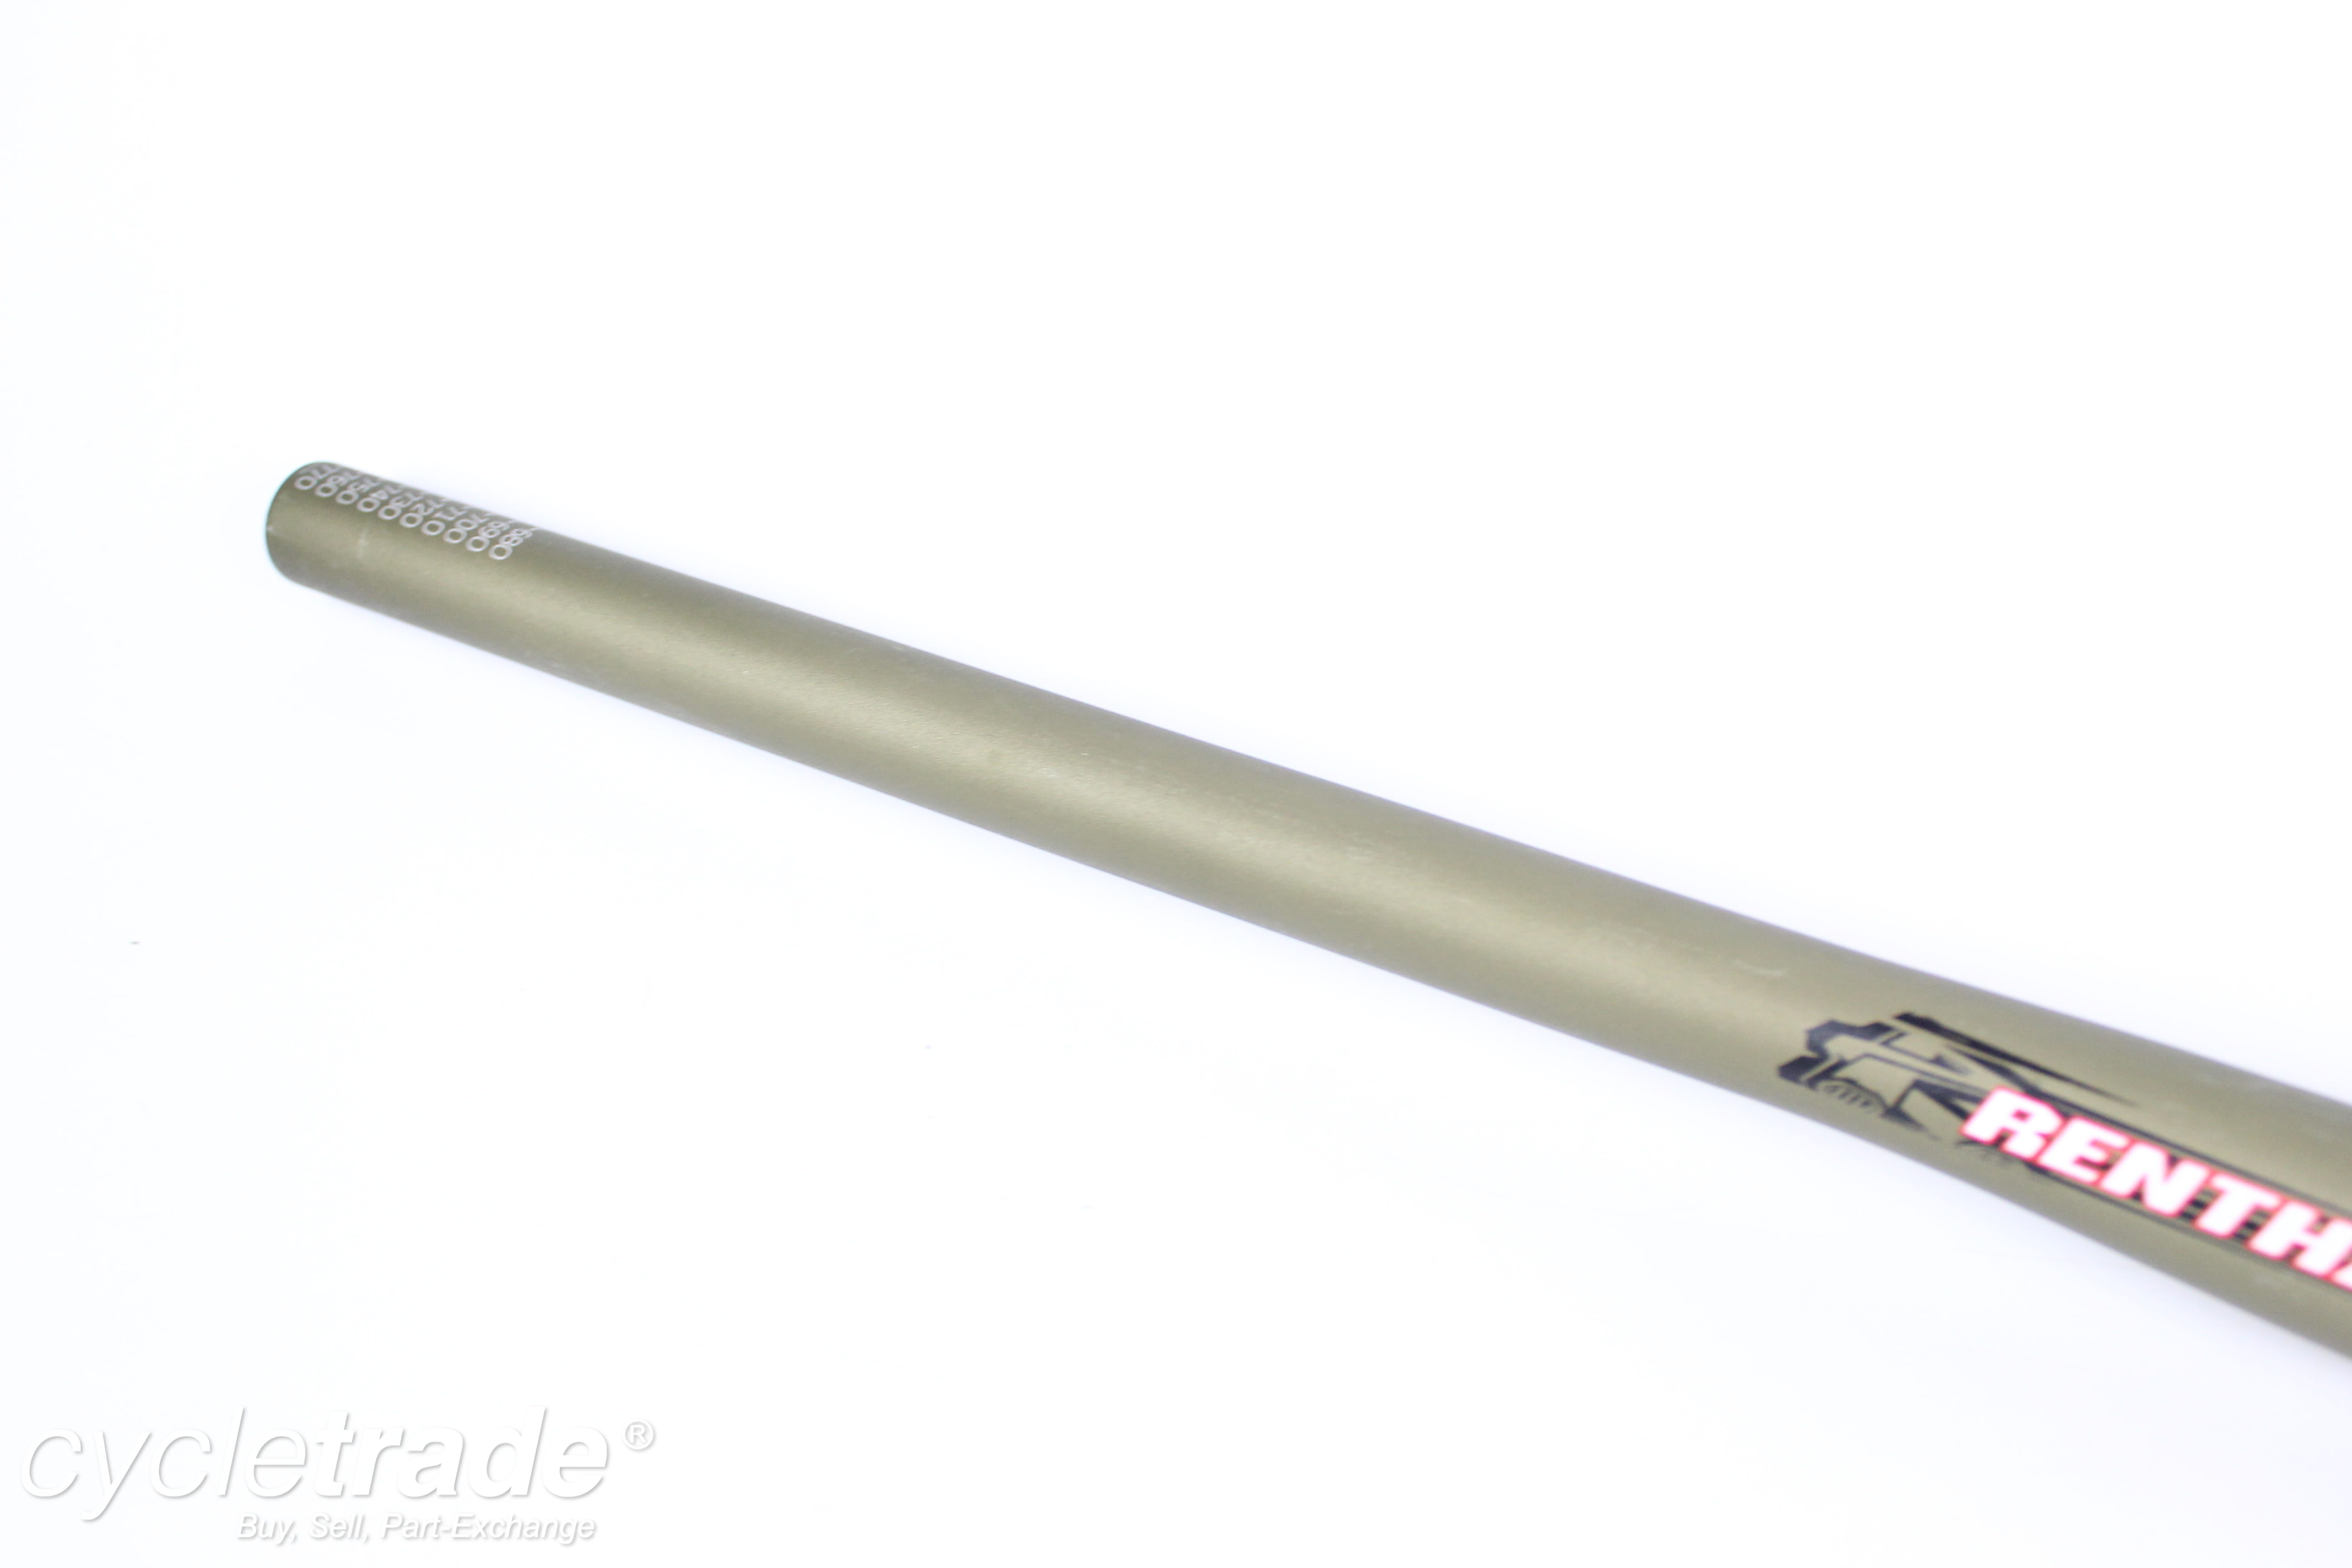 Flat handlebar - Renthal Fatbar M110/M100, 780/740mm, 10/30mm rise, 31.8mm - Grade A